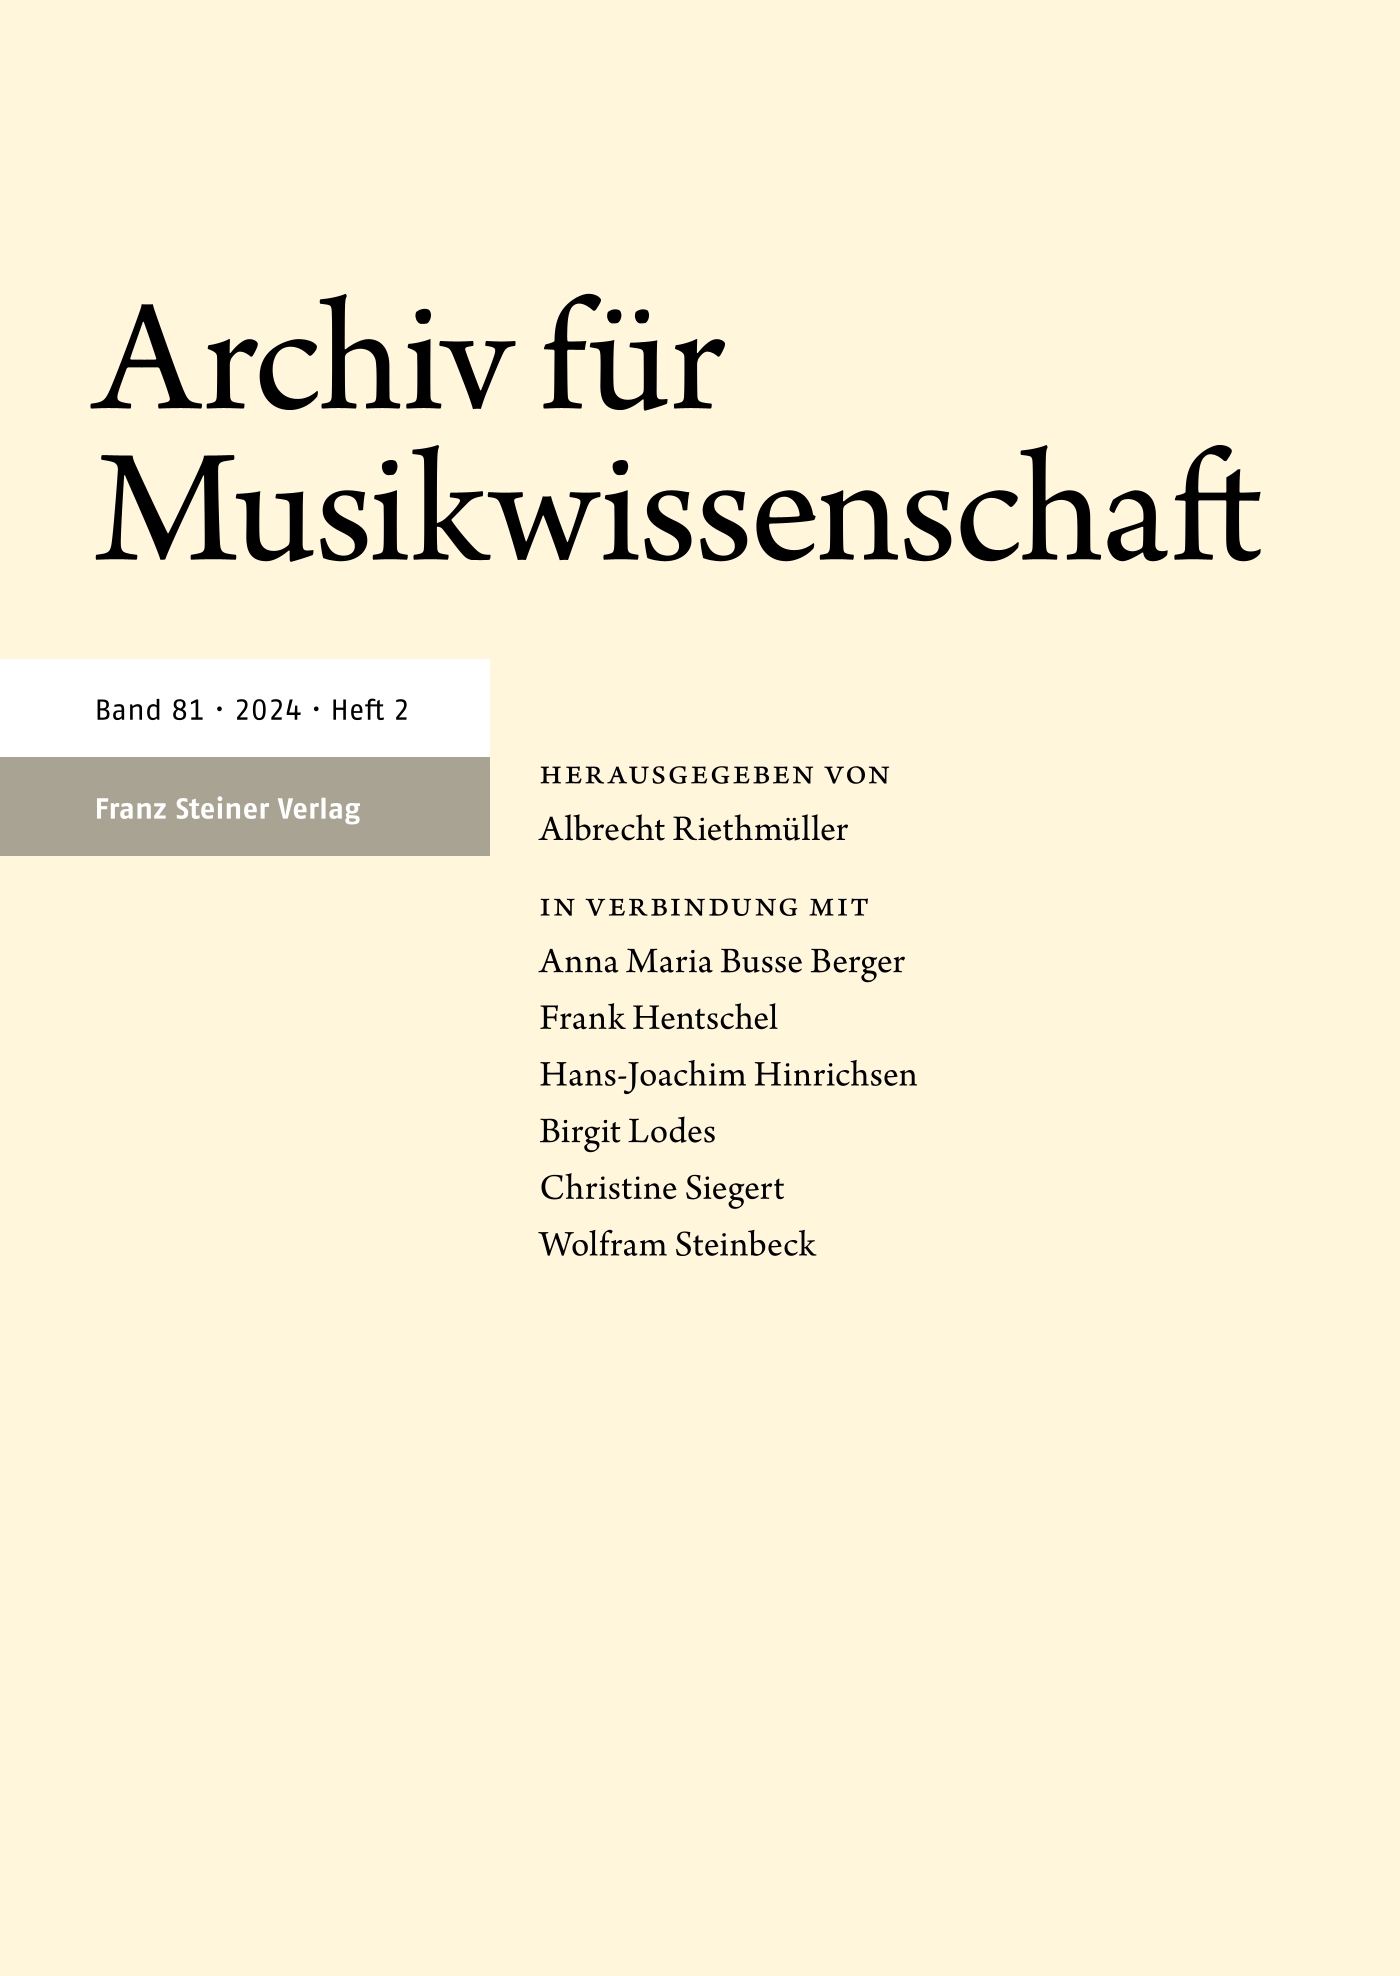 Archiv für Musikwissenschaft - online